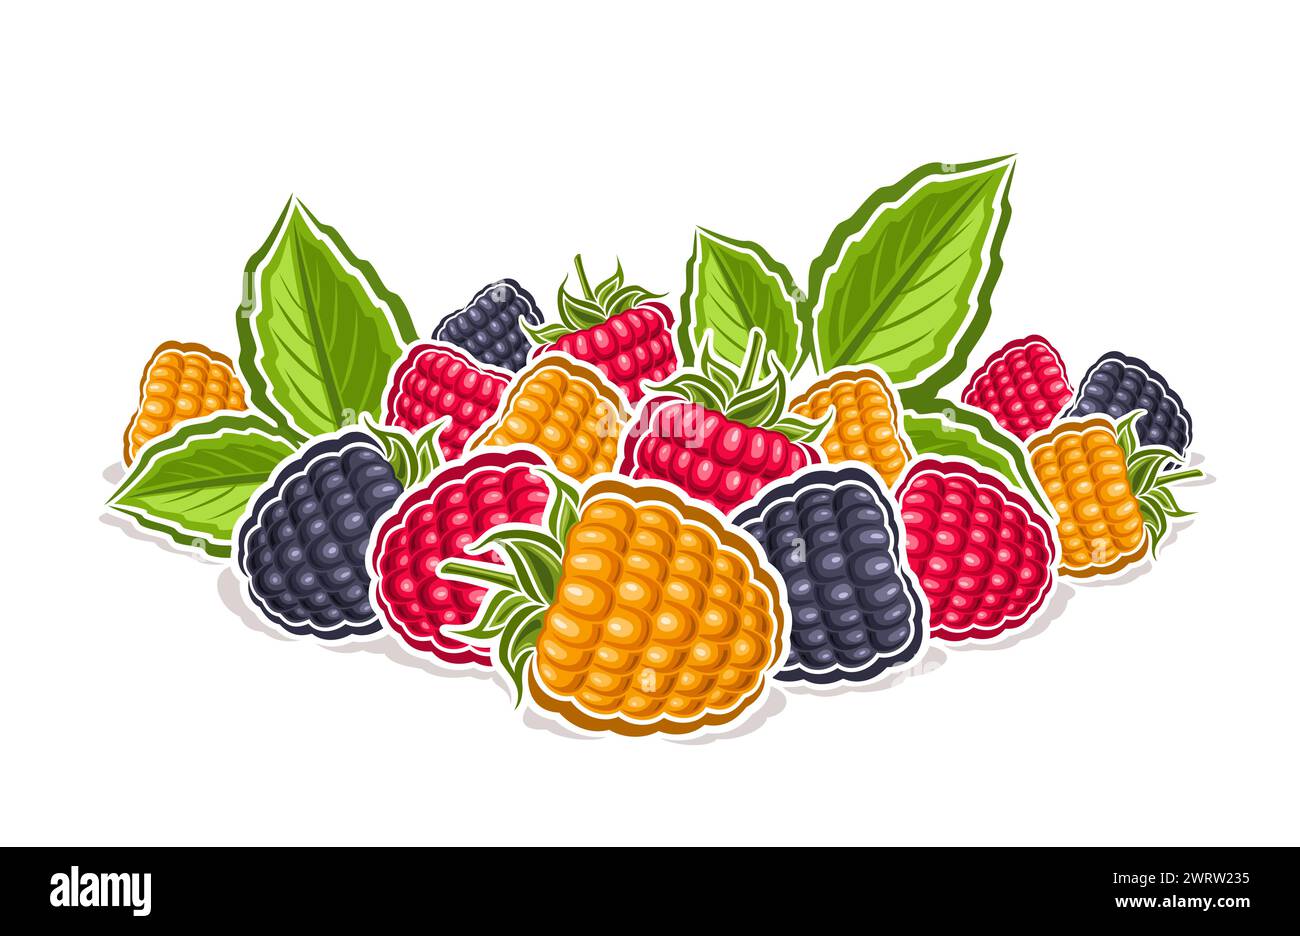 Vektor-Logo für Wild Berry, dekoratives horizontales Poster mit Umrissillustration der bunten Himbeerkomposition mit grünem Zweig, Zeichentrickdesign Stock Vektor